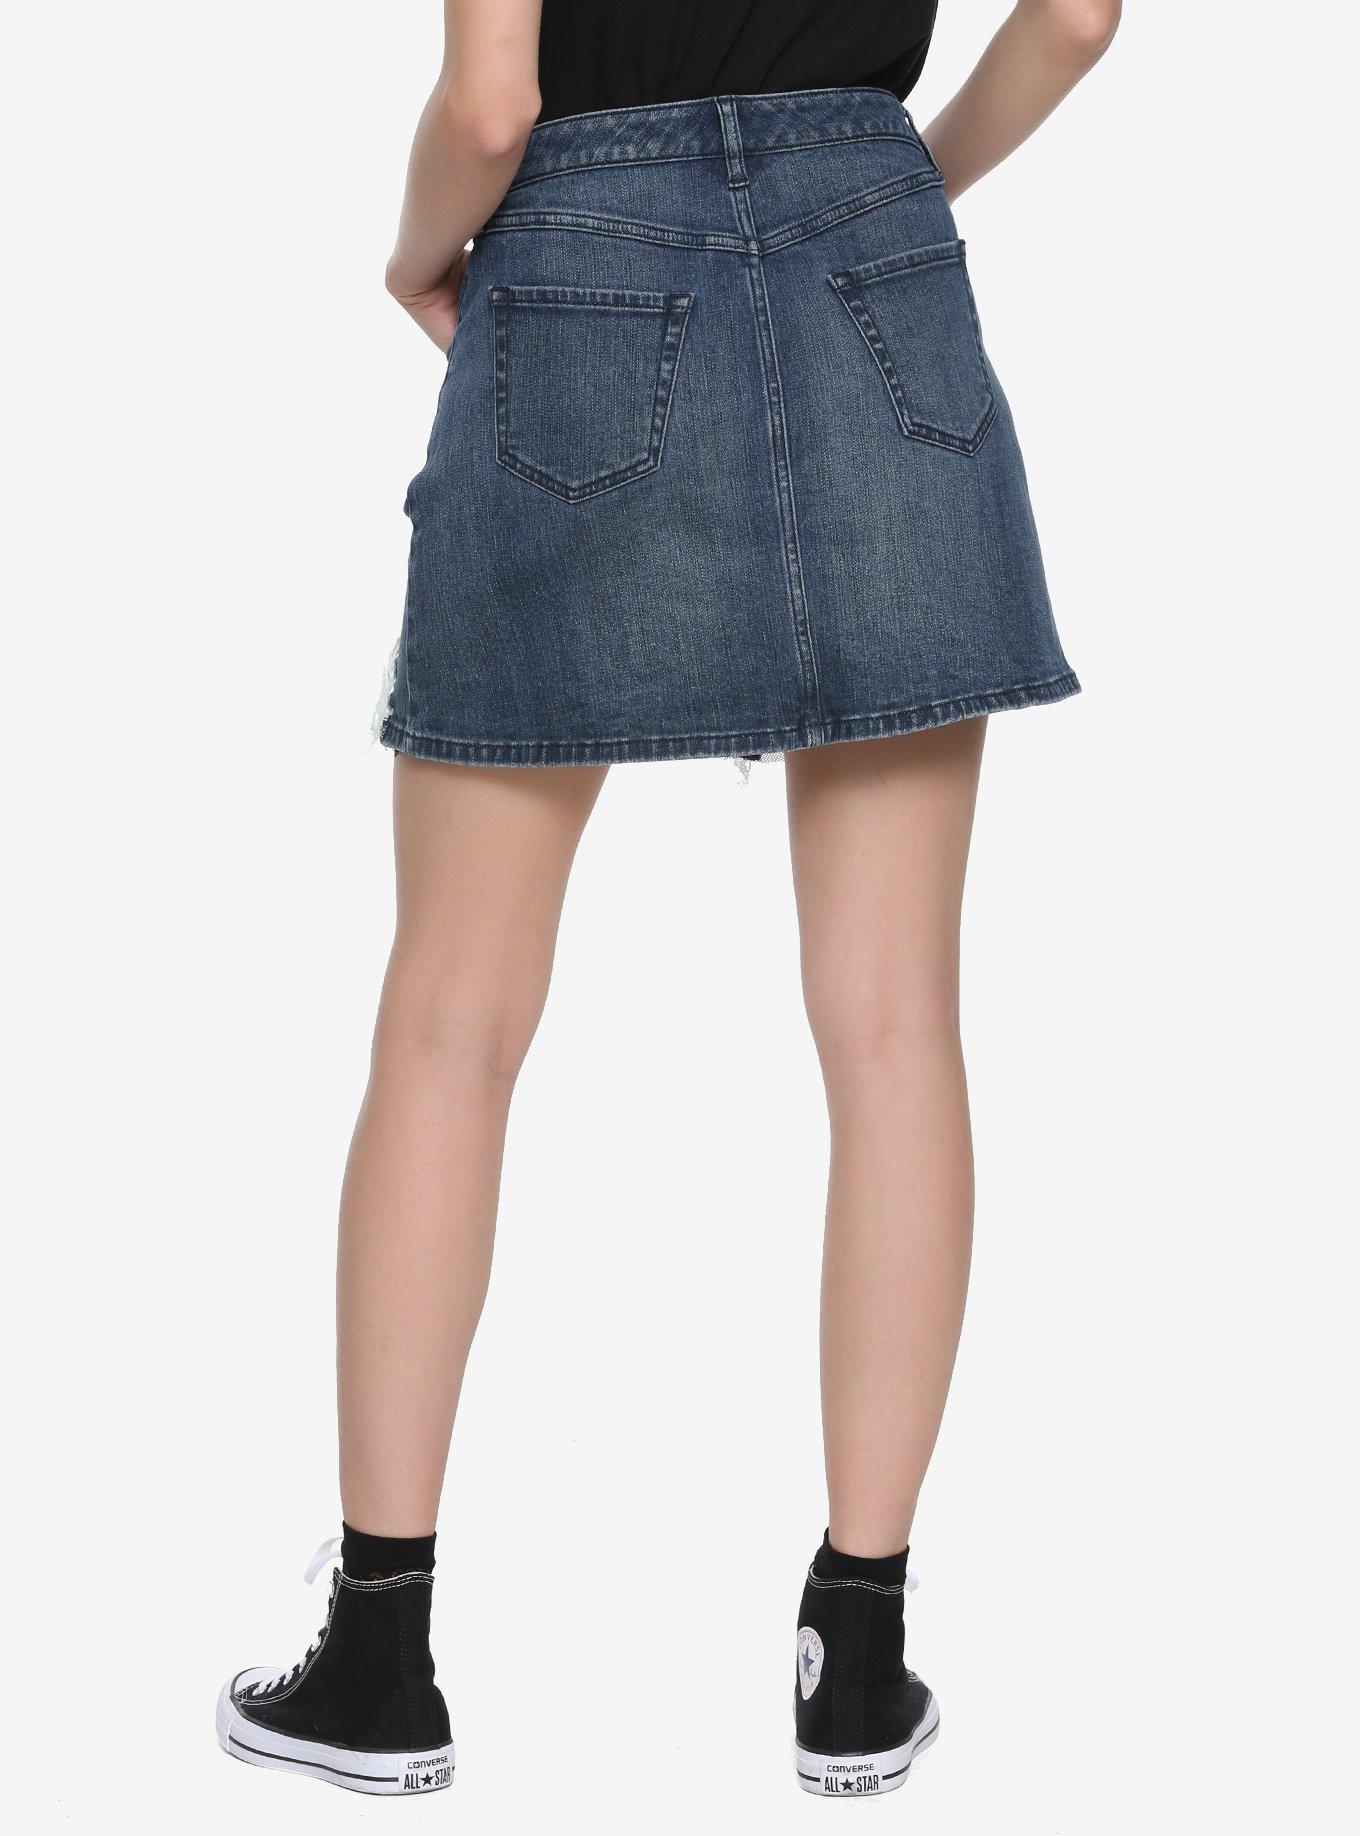 Blackheart Fishnet Denim Mini Skirt, DENIM, alternate